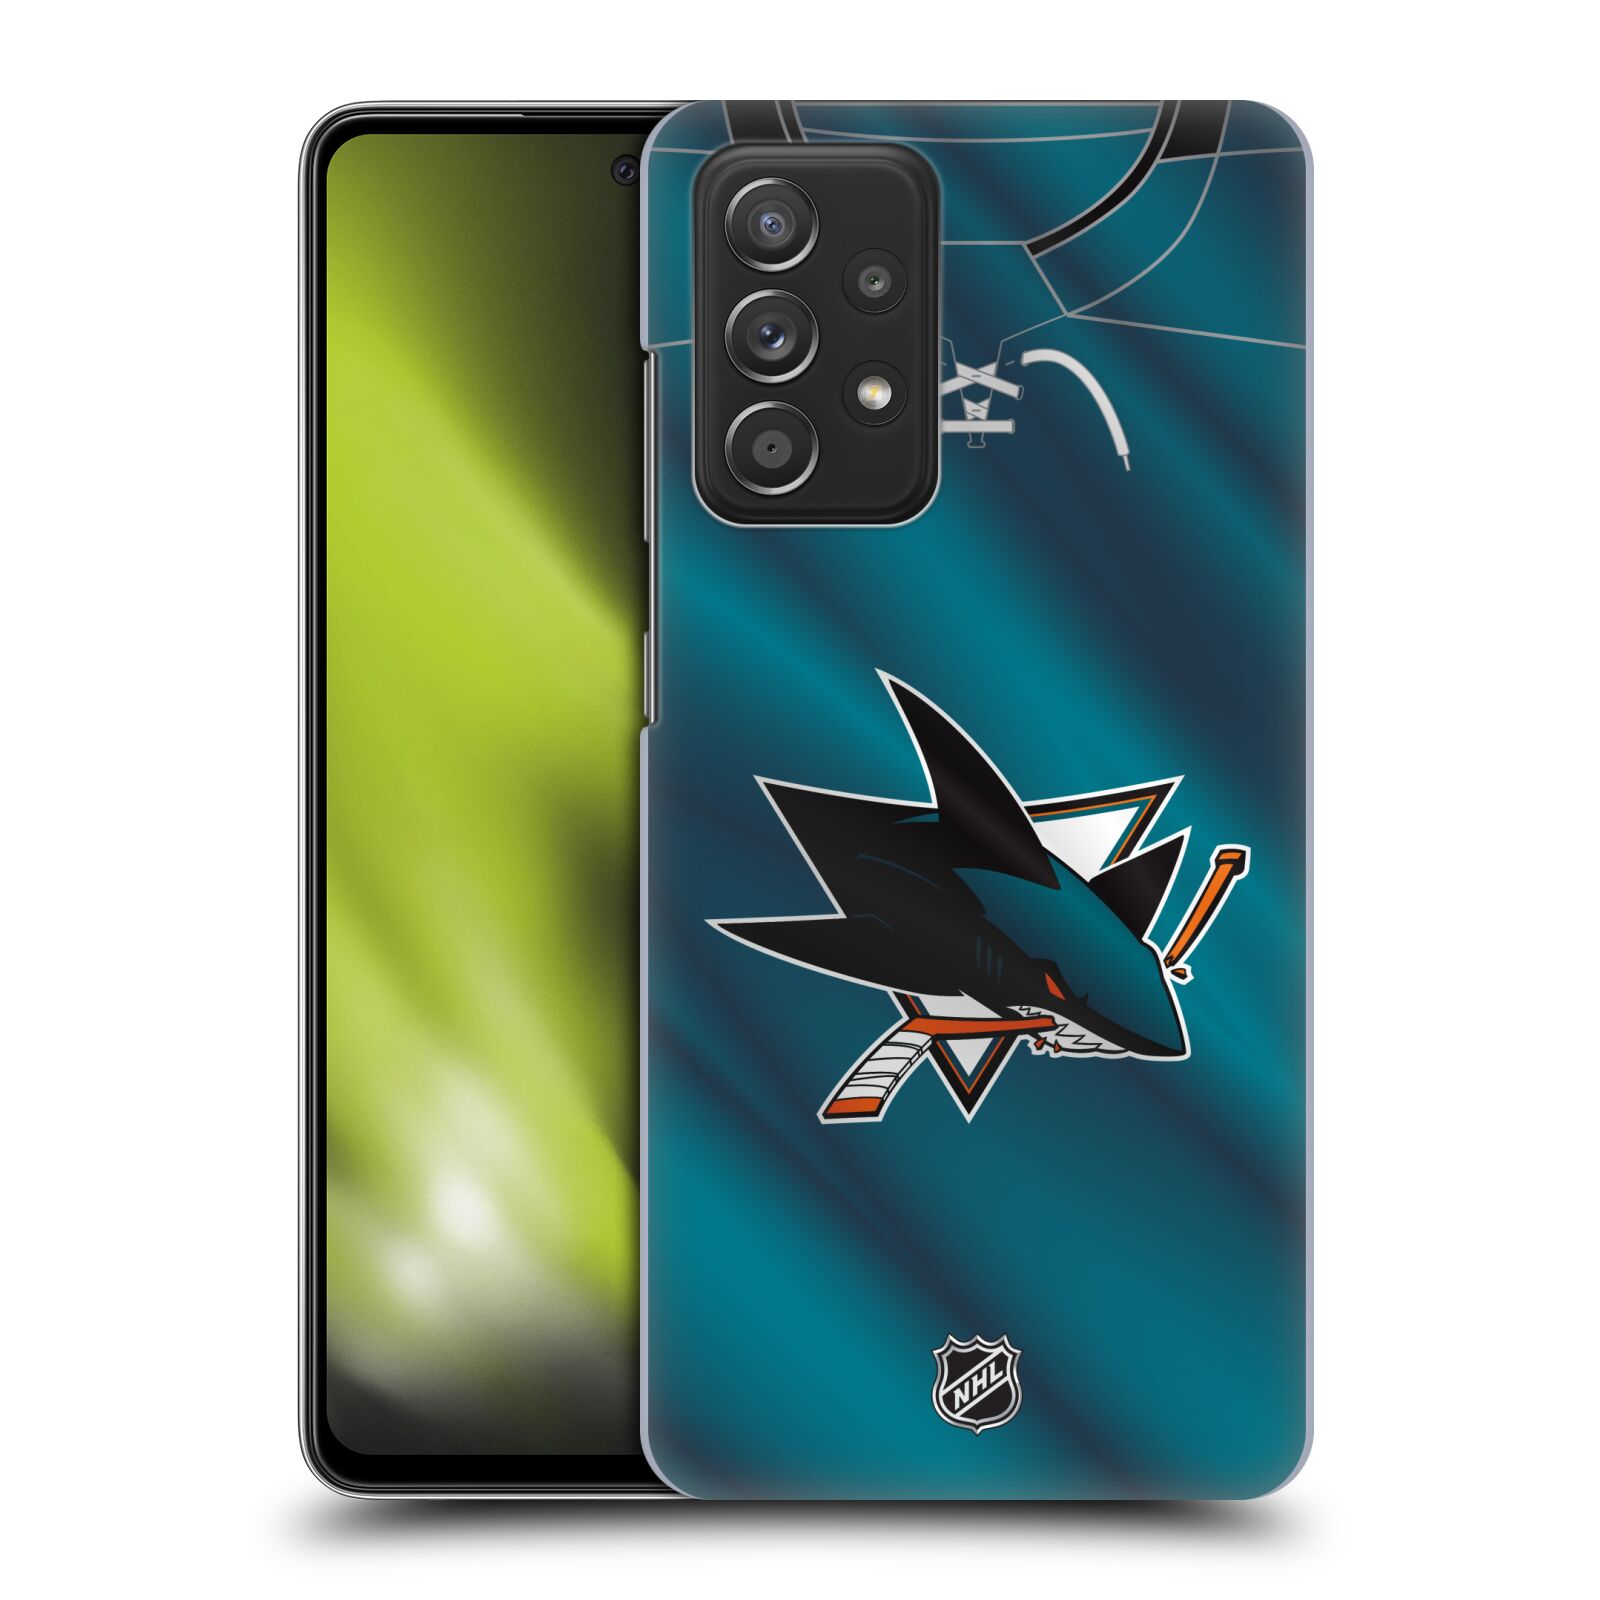 Pouzdro na mobil Samsung Galaxy A52 / A52 5G / A52s 5G - HEAD CASE - Hokej NHL - San Jose Sharks - Znak na dresu